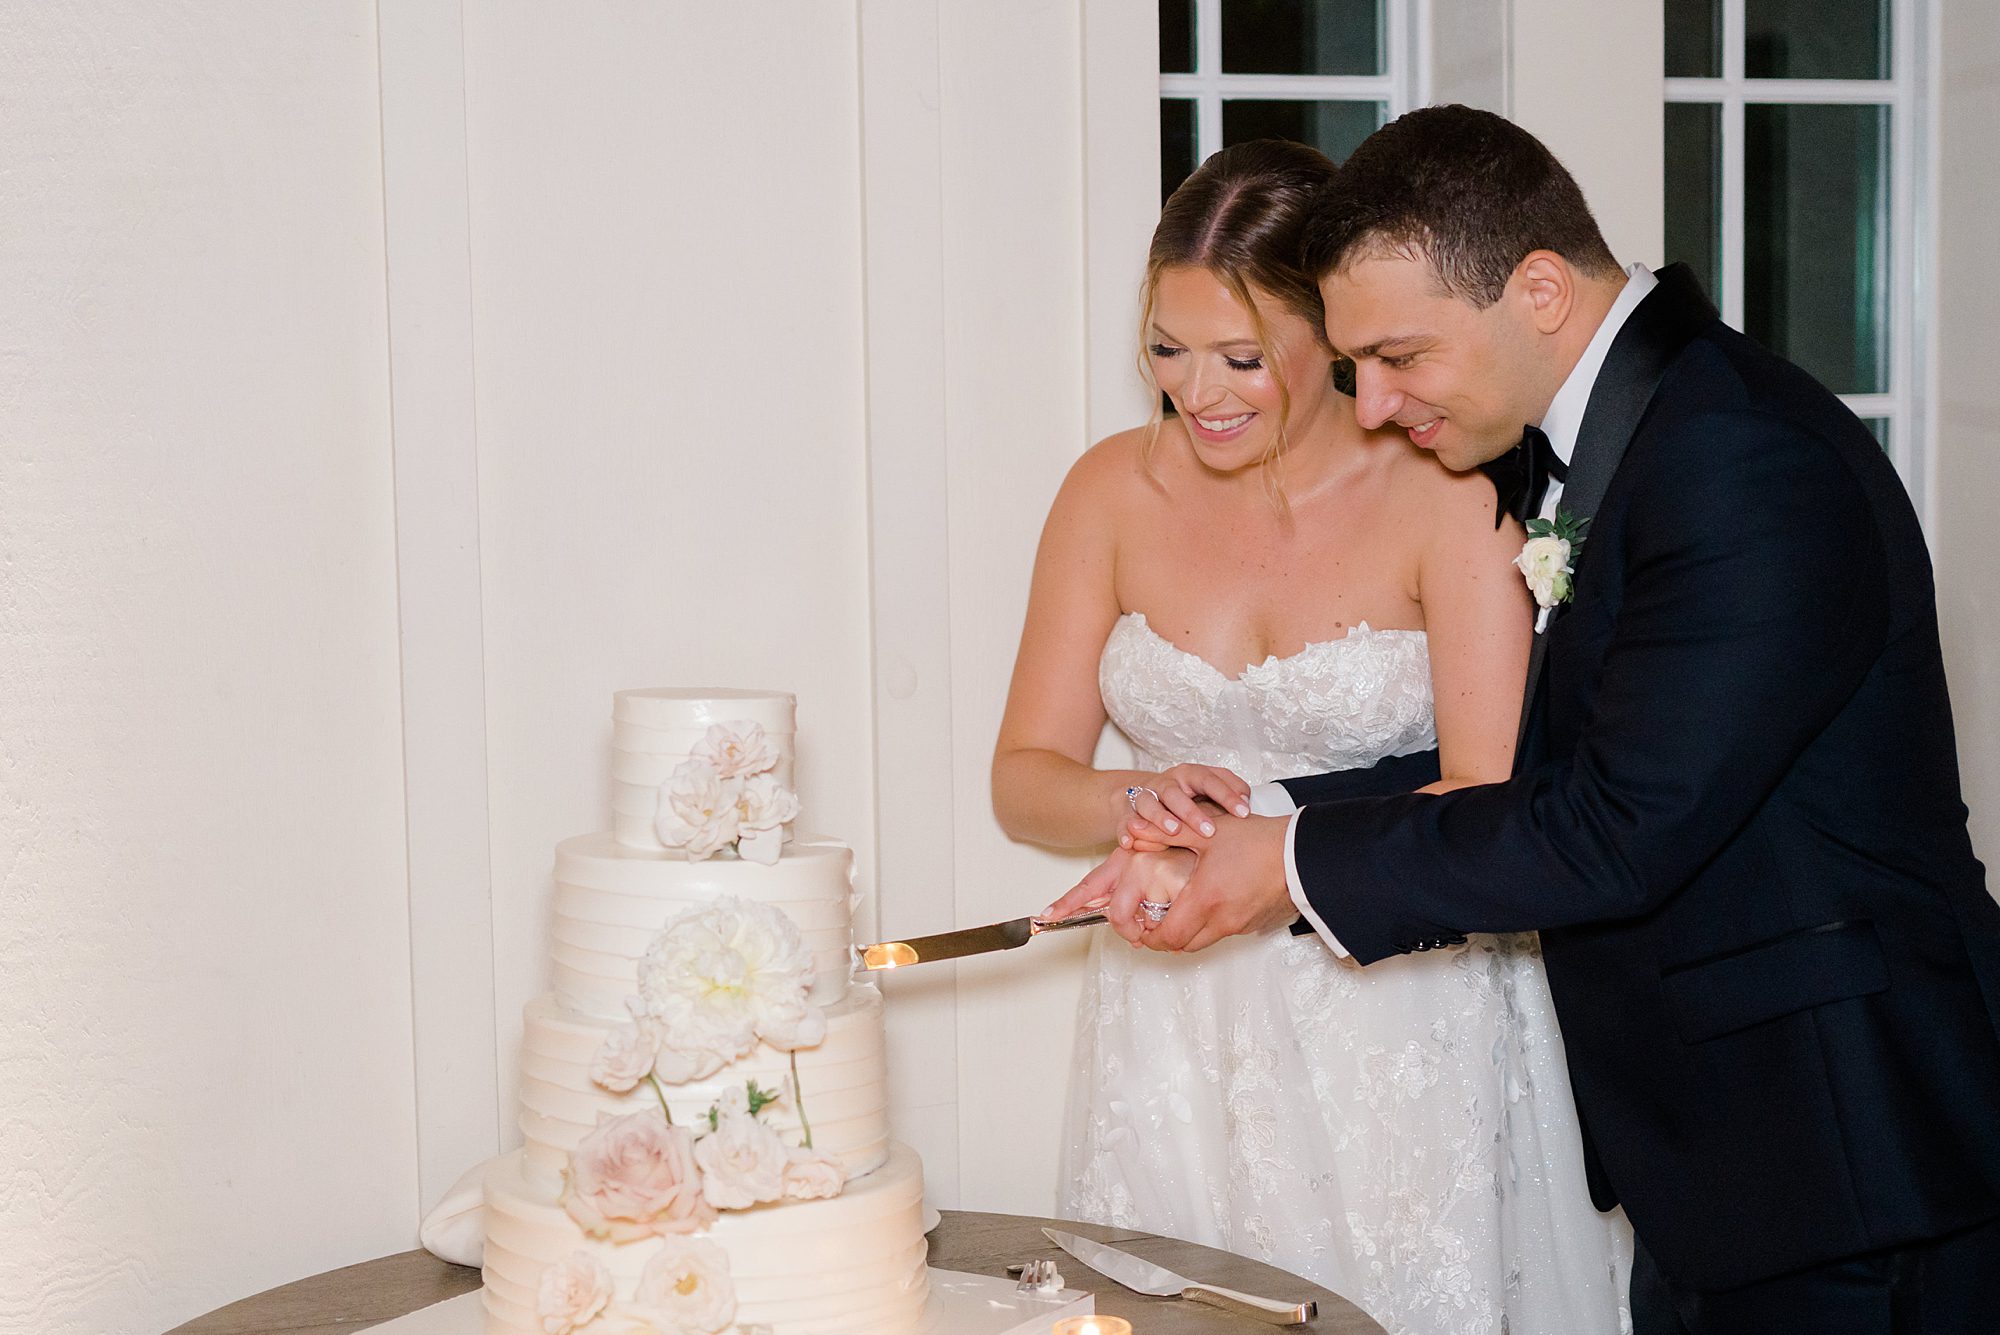 newlyweds cut their wedding cake 